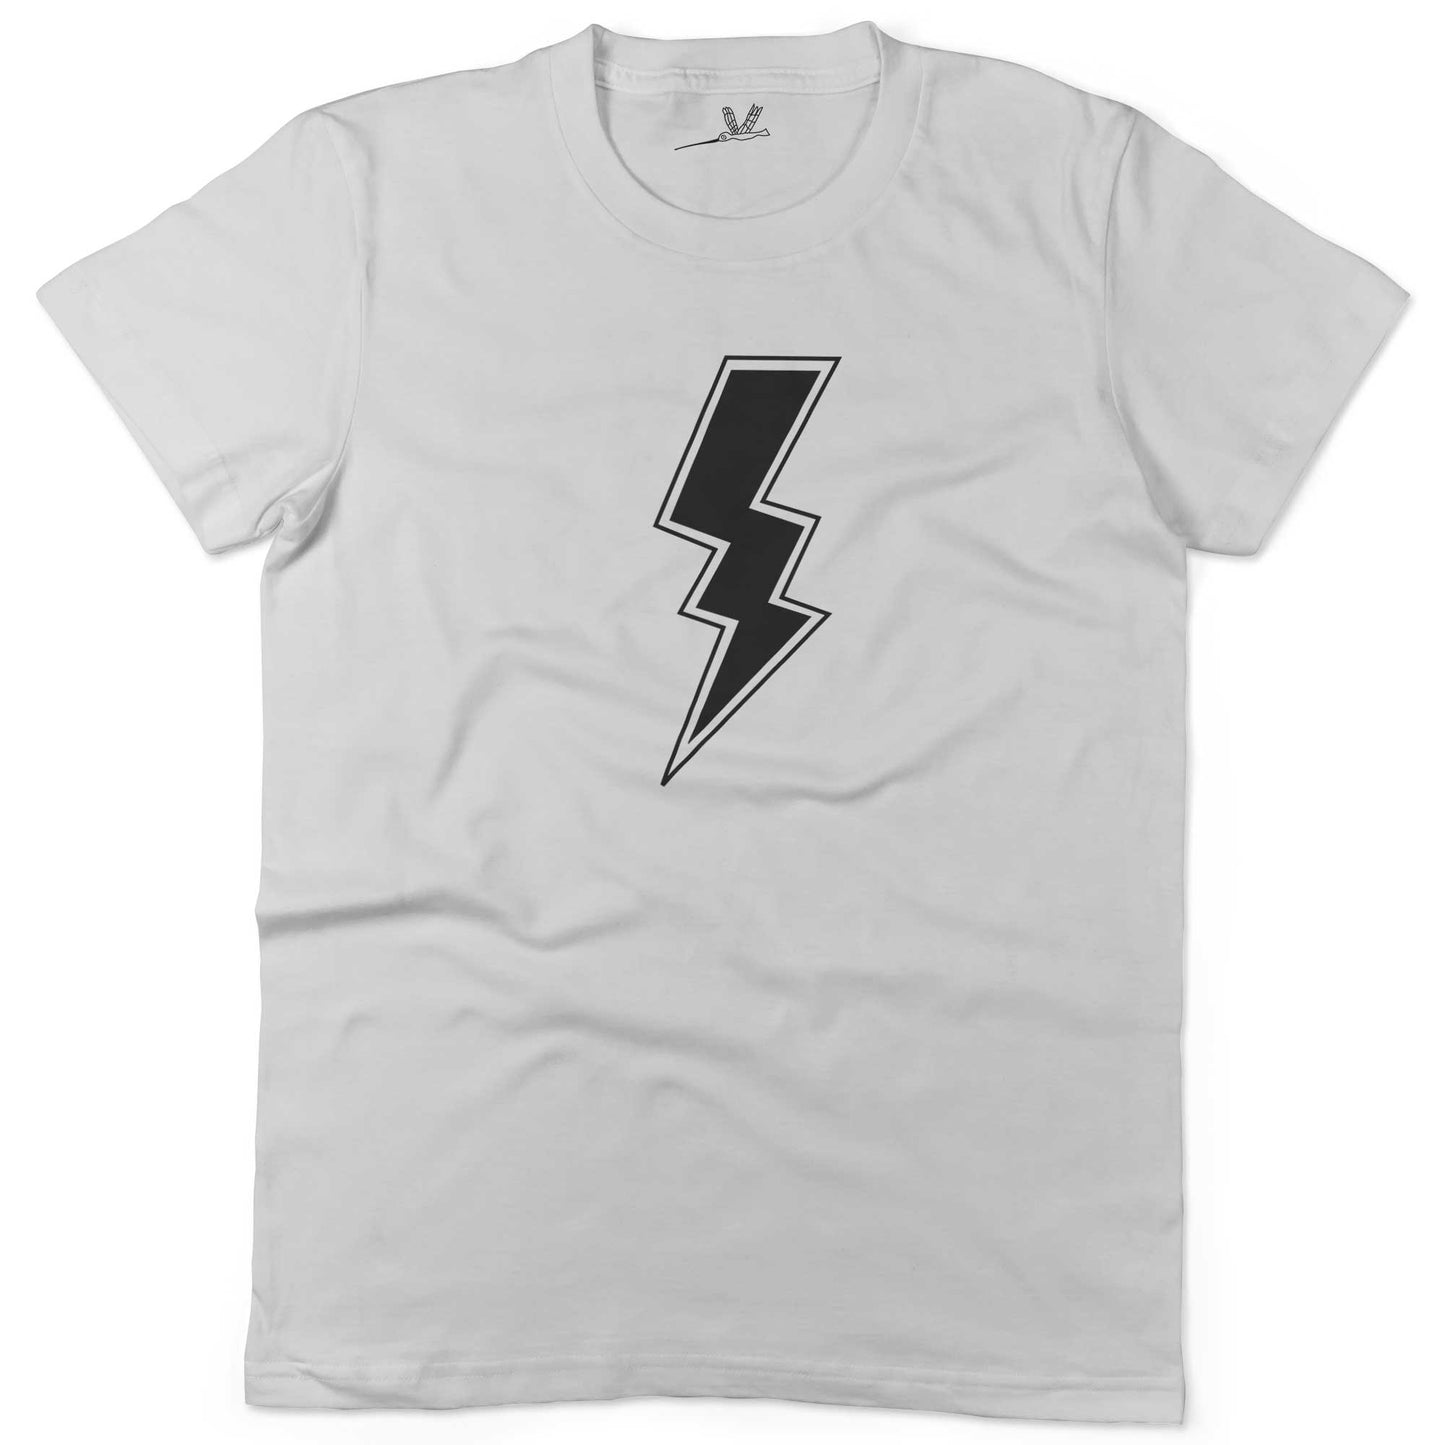 Giant Lightning Bolt Unisex Or Women's Cotton T-shirt-White-Woman